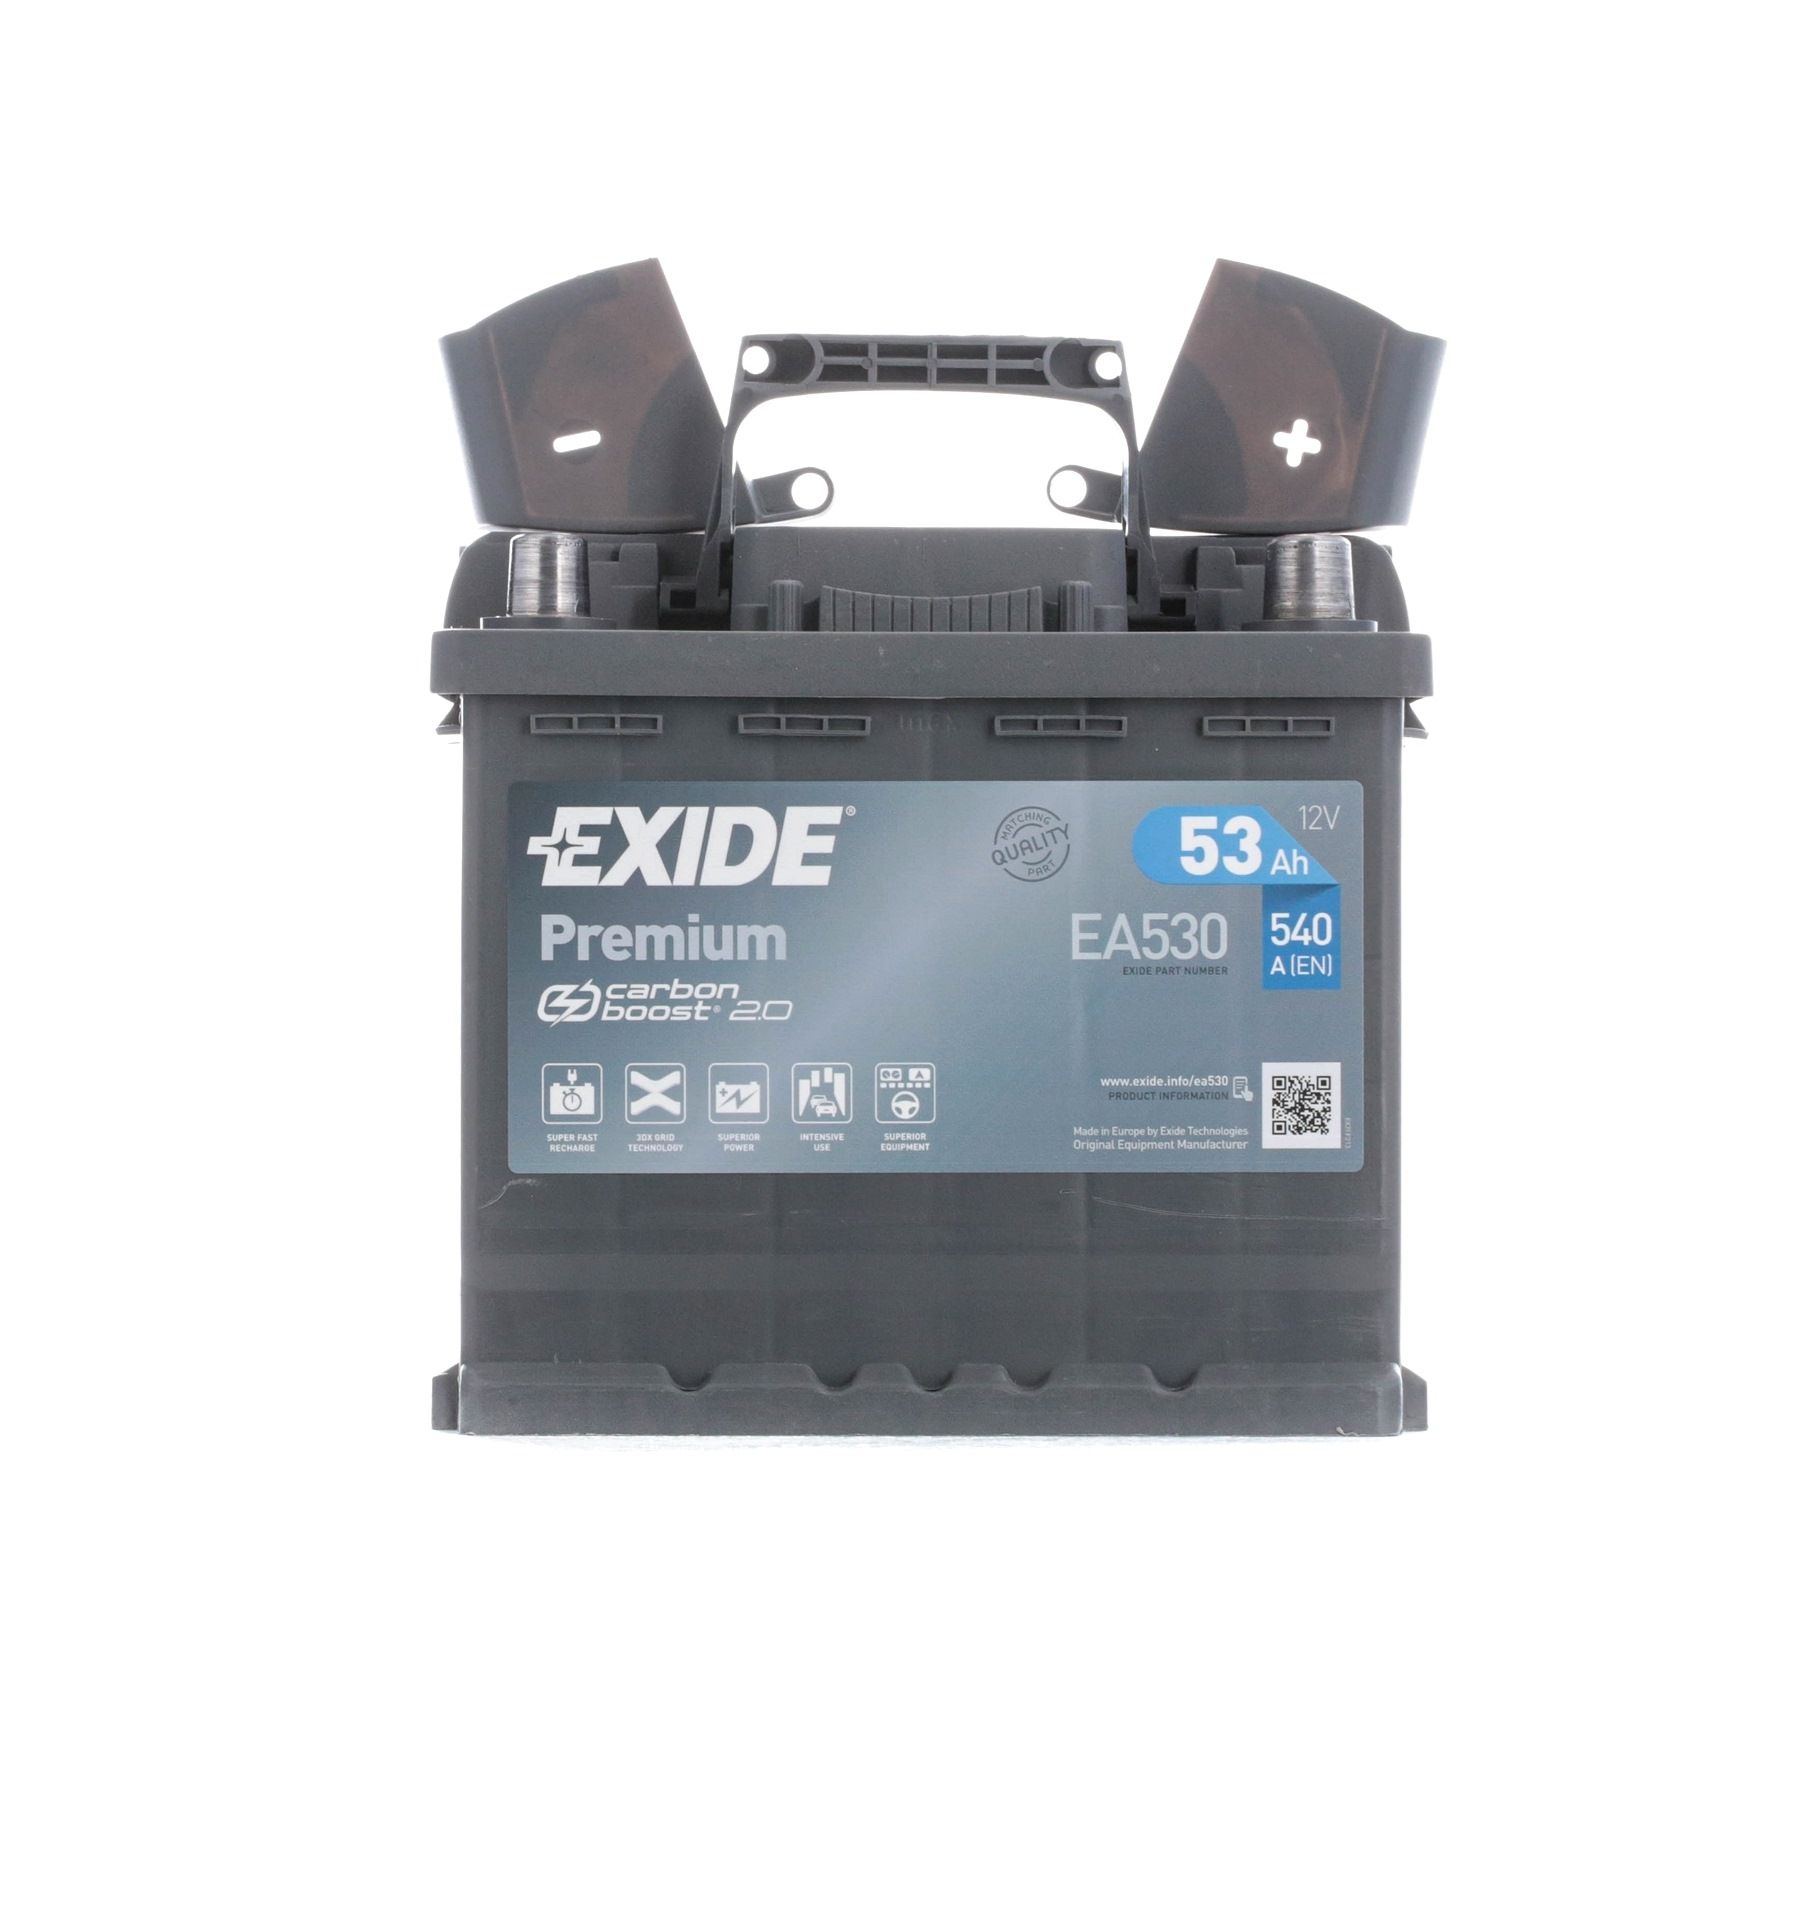 EXIDE PREMIUM EA530 Batterie 12V 53Ah 540A B13 Bleiakkumulator